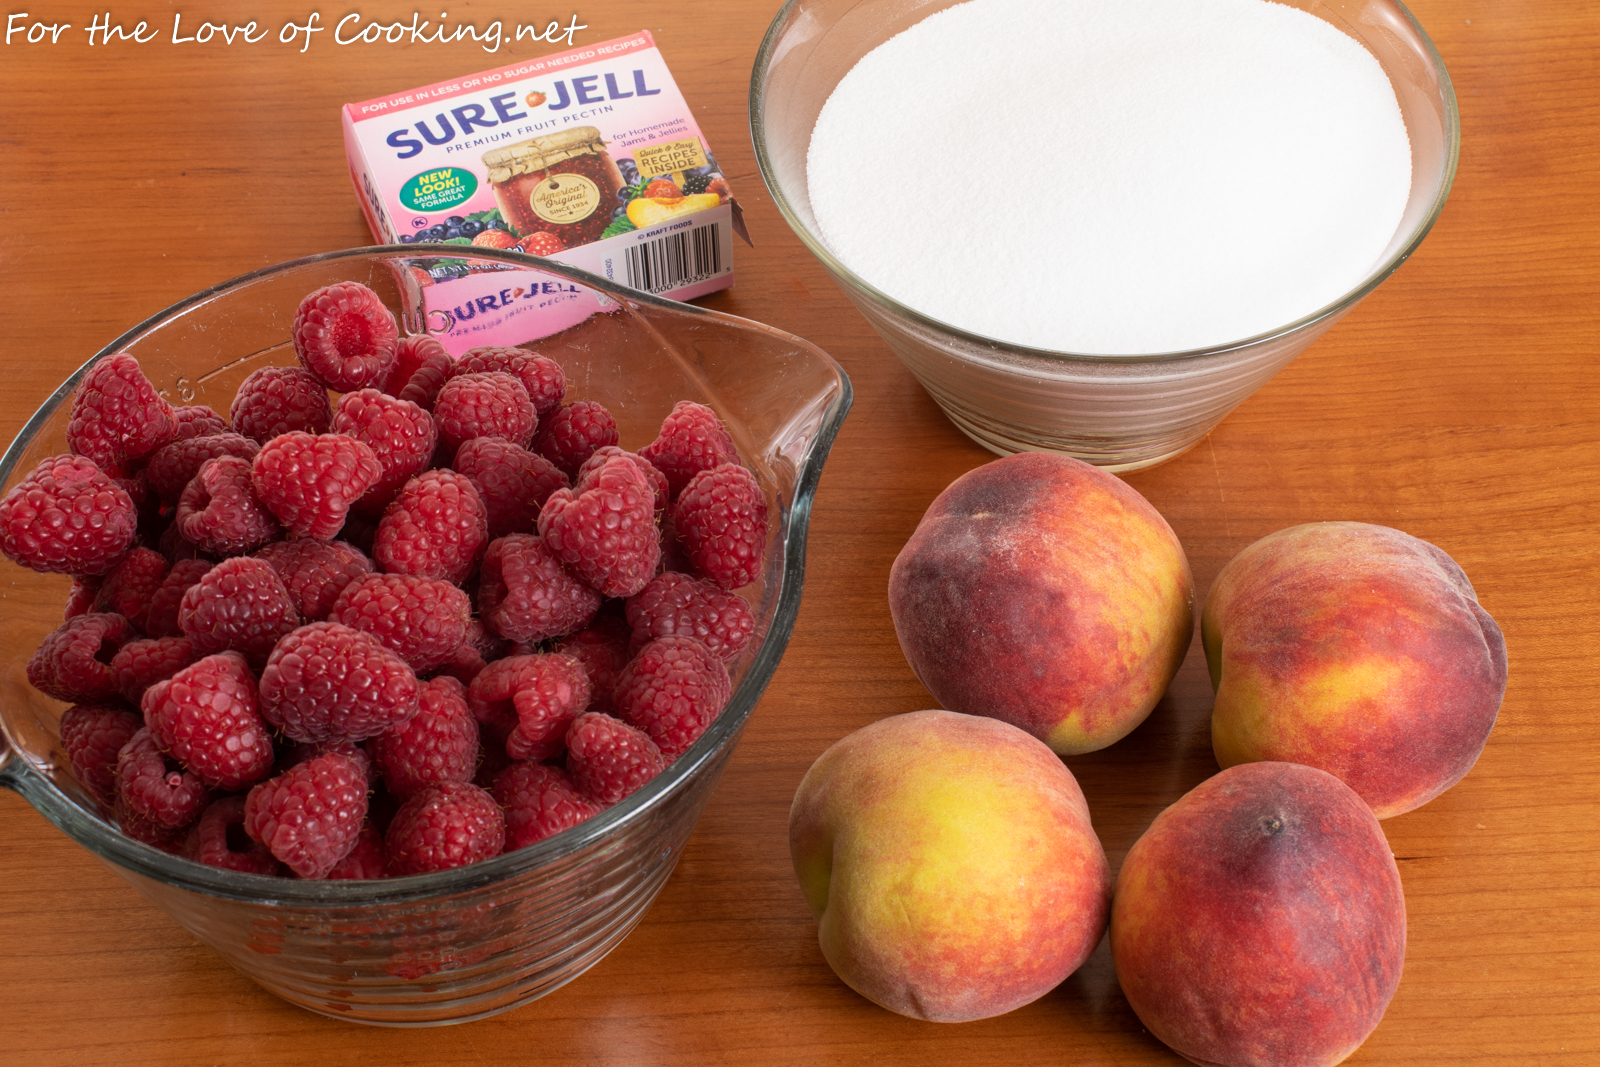 Raspberry-Peach Freezer Jam